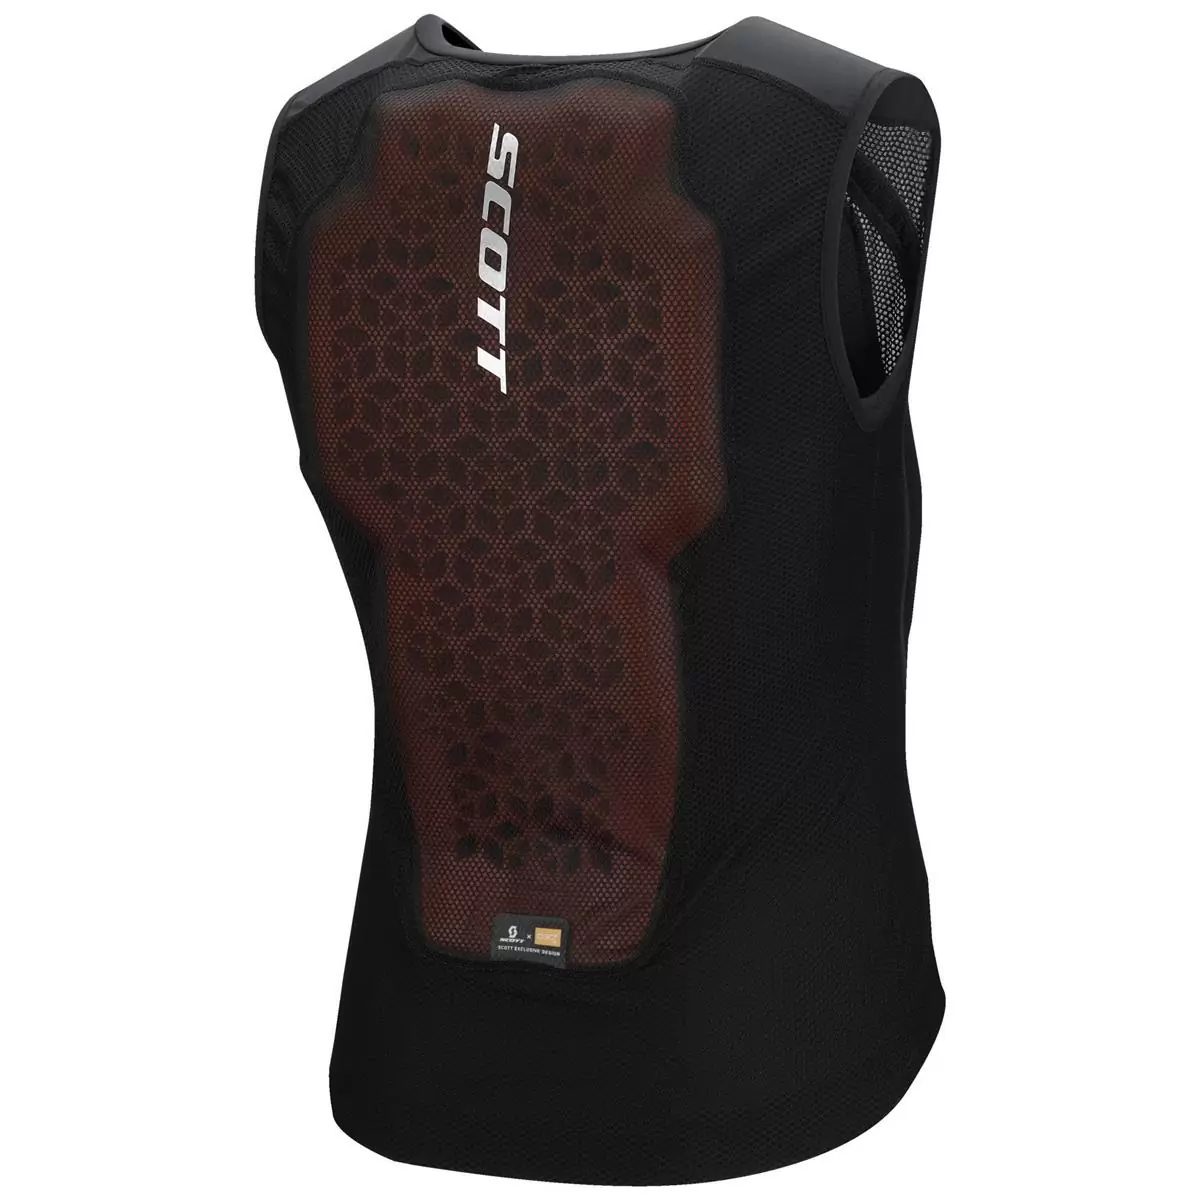 Vest Protector Softcon Hybrid Pro Protective Vest Black Size XXL #1